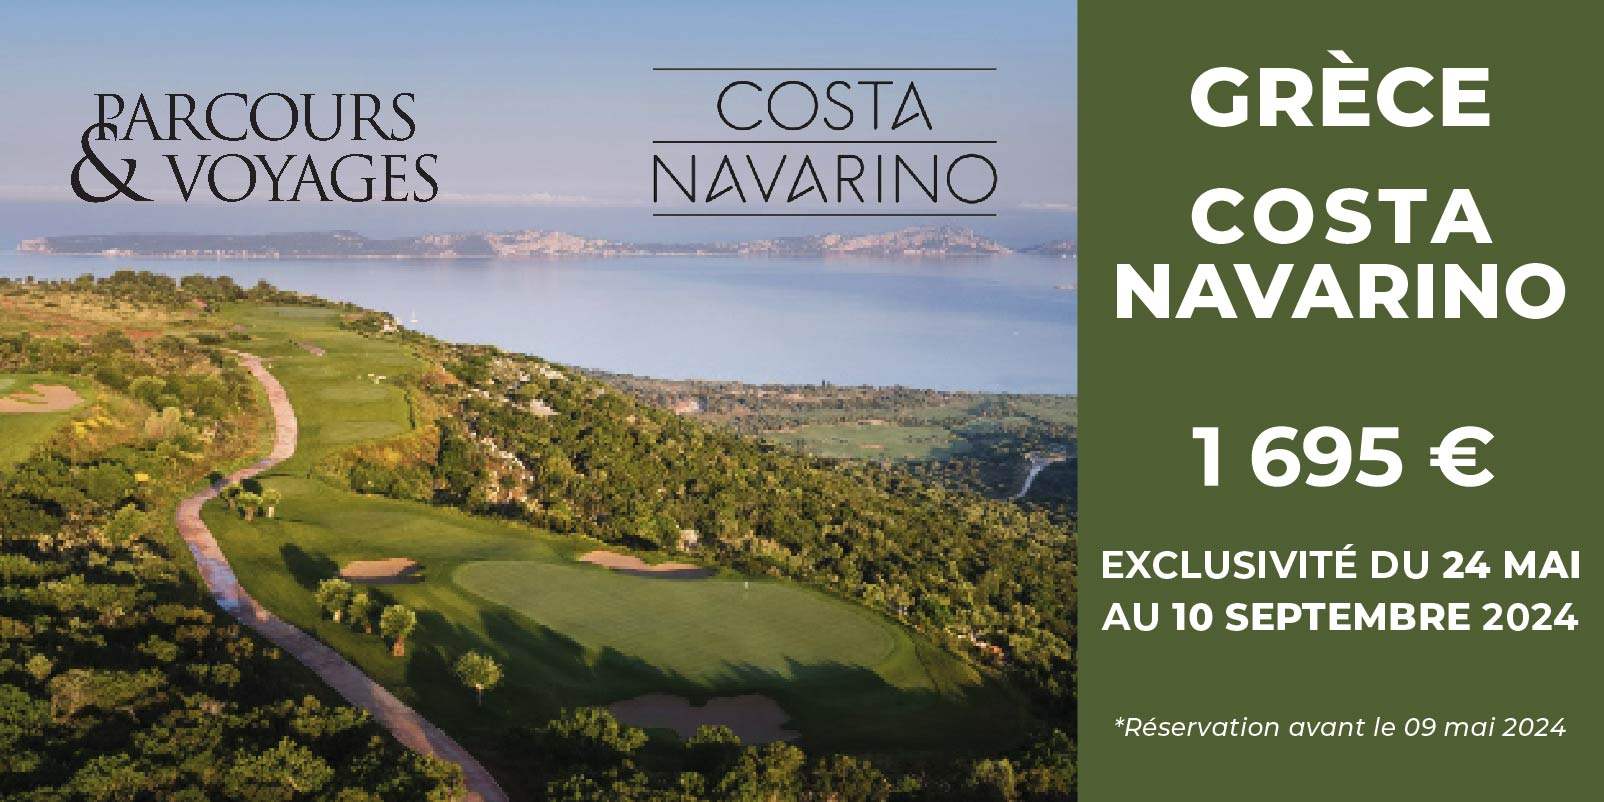 Parcours Voyages D01 2024 – Costa Navarino – Bandeau